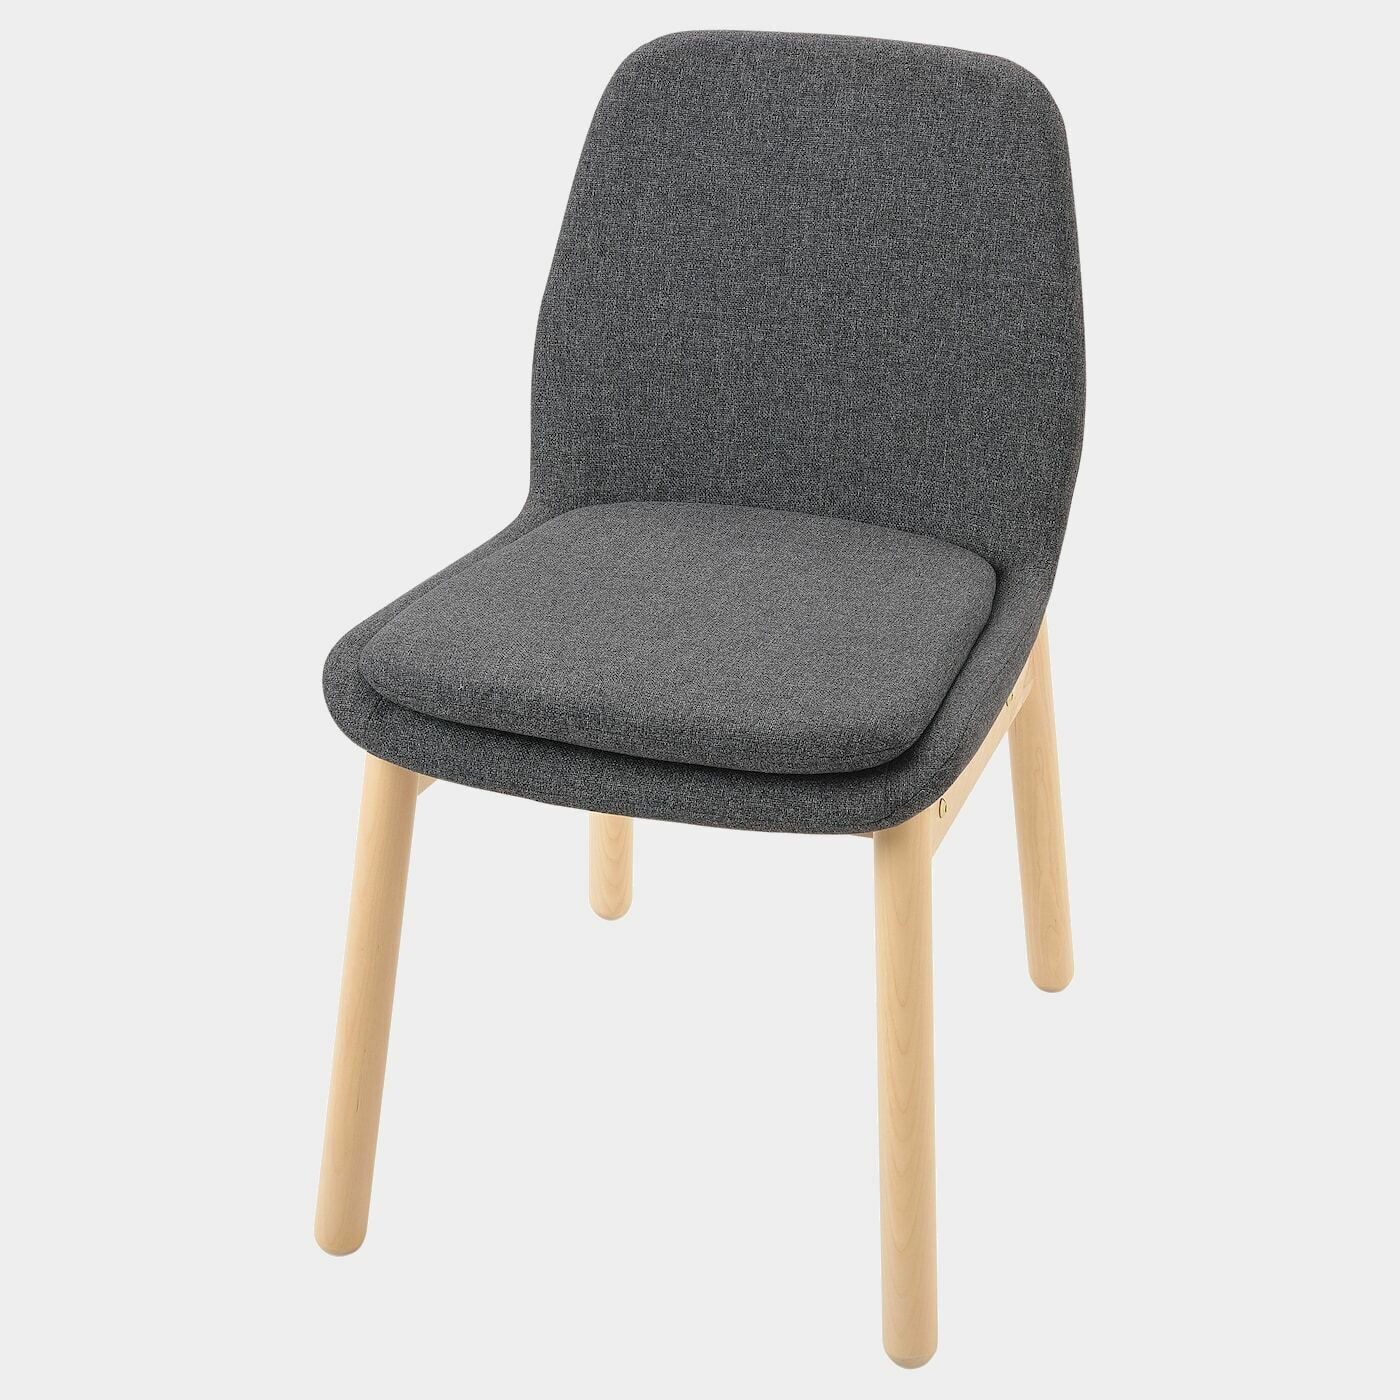 VEDBO Stuhl  - Esszimmerstühle - Möbel Ideen für dein Zuhause von Home Trends. Möbel Trends von Social Media Influencer für dein Skandi Zuhause.